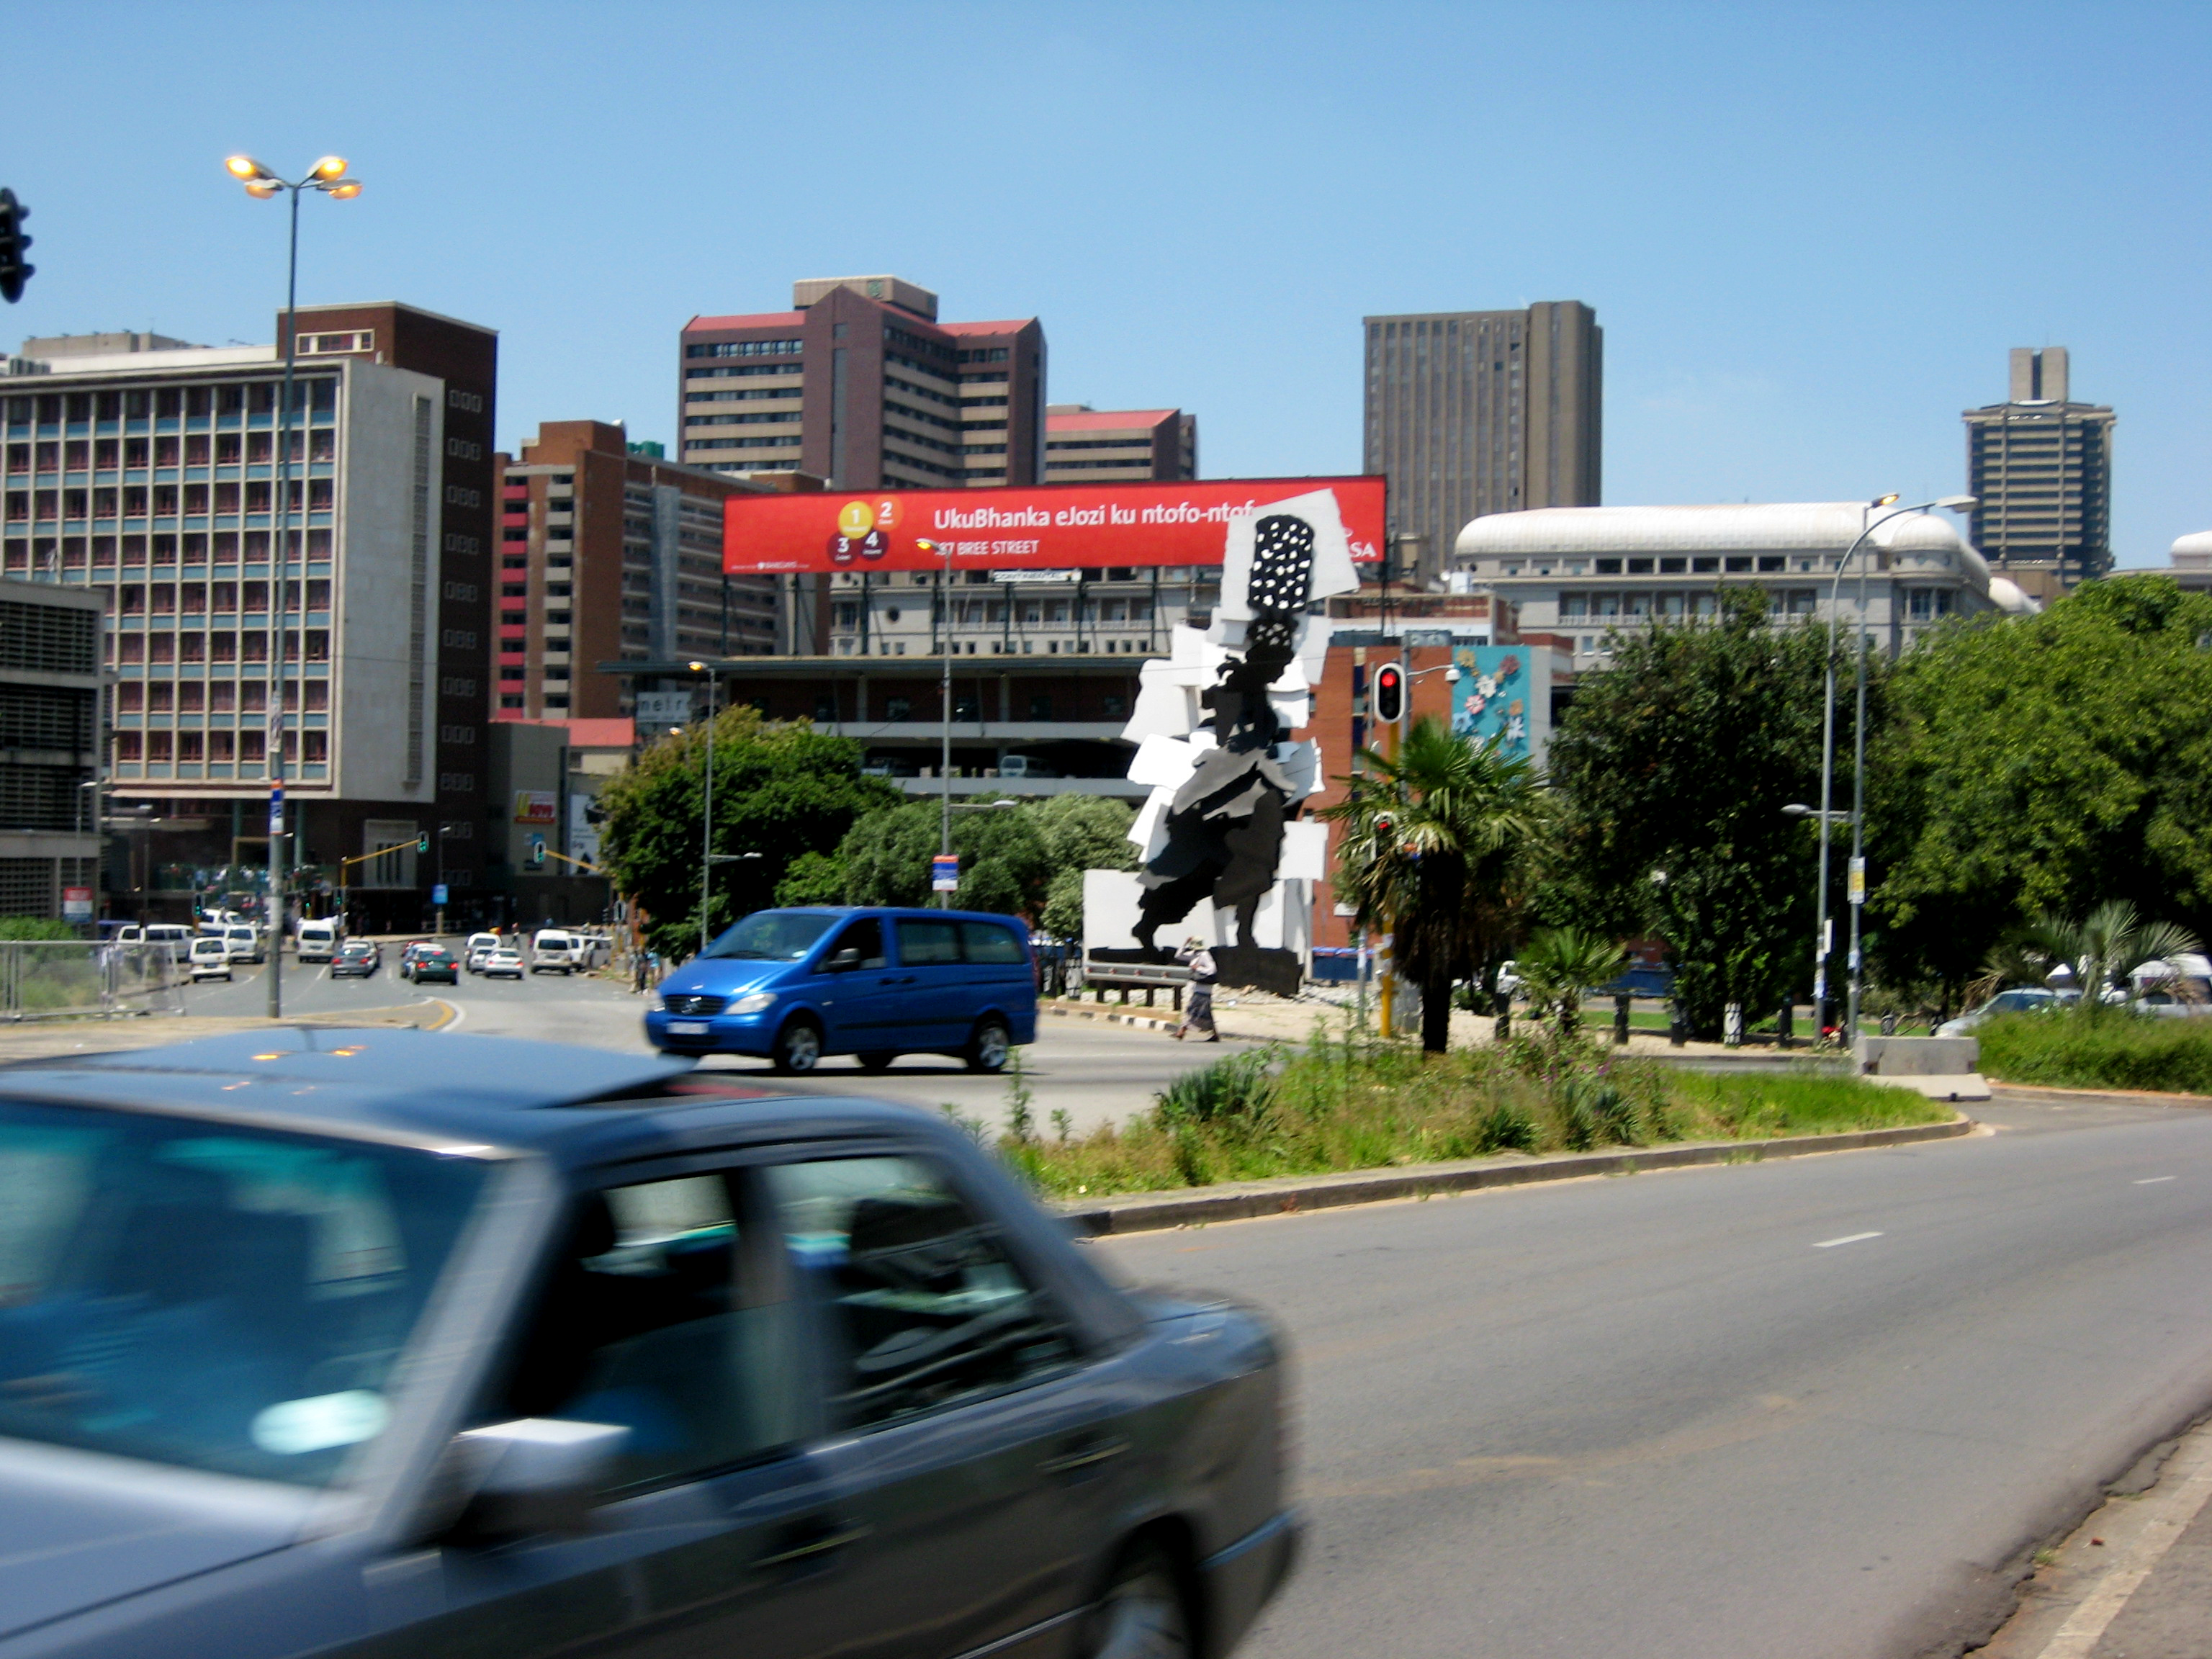 Cityscape with public sculpture